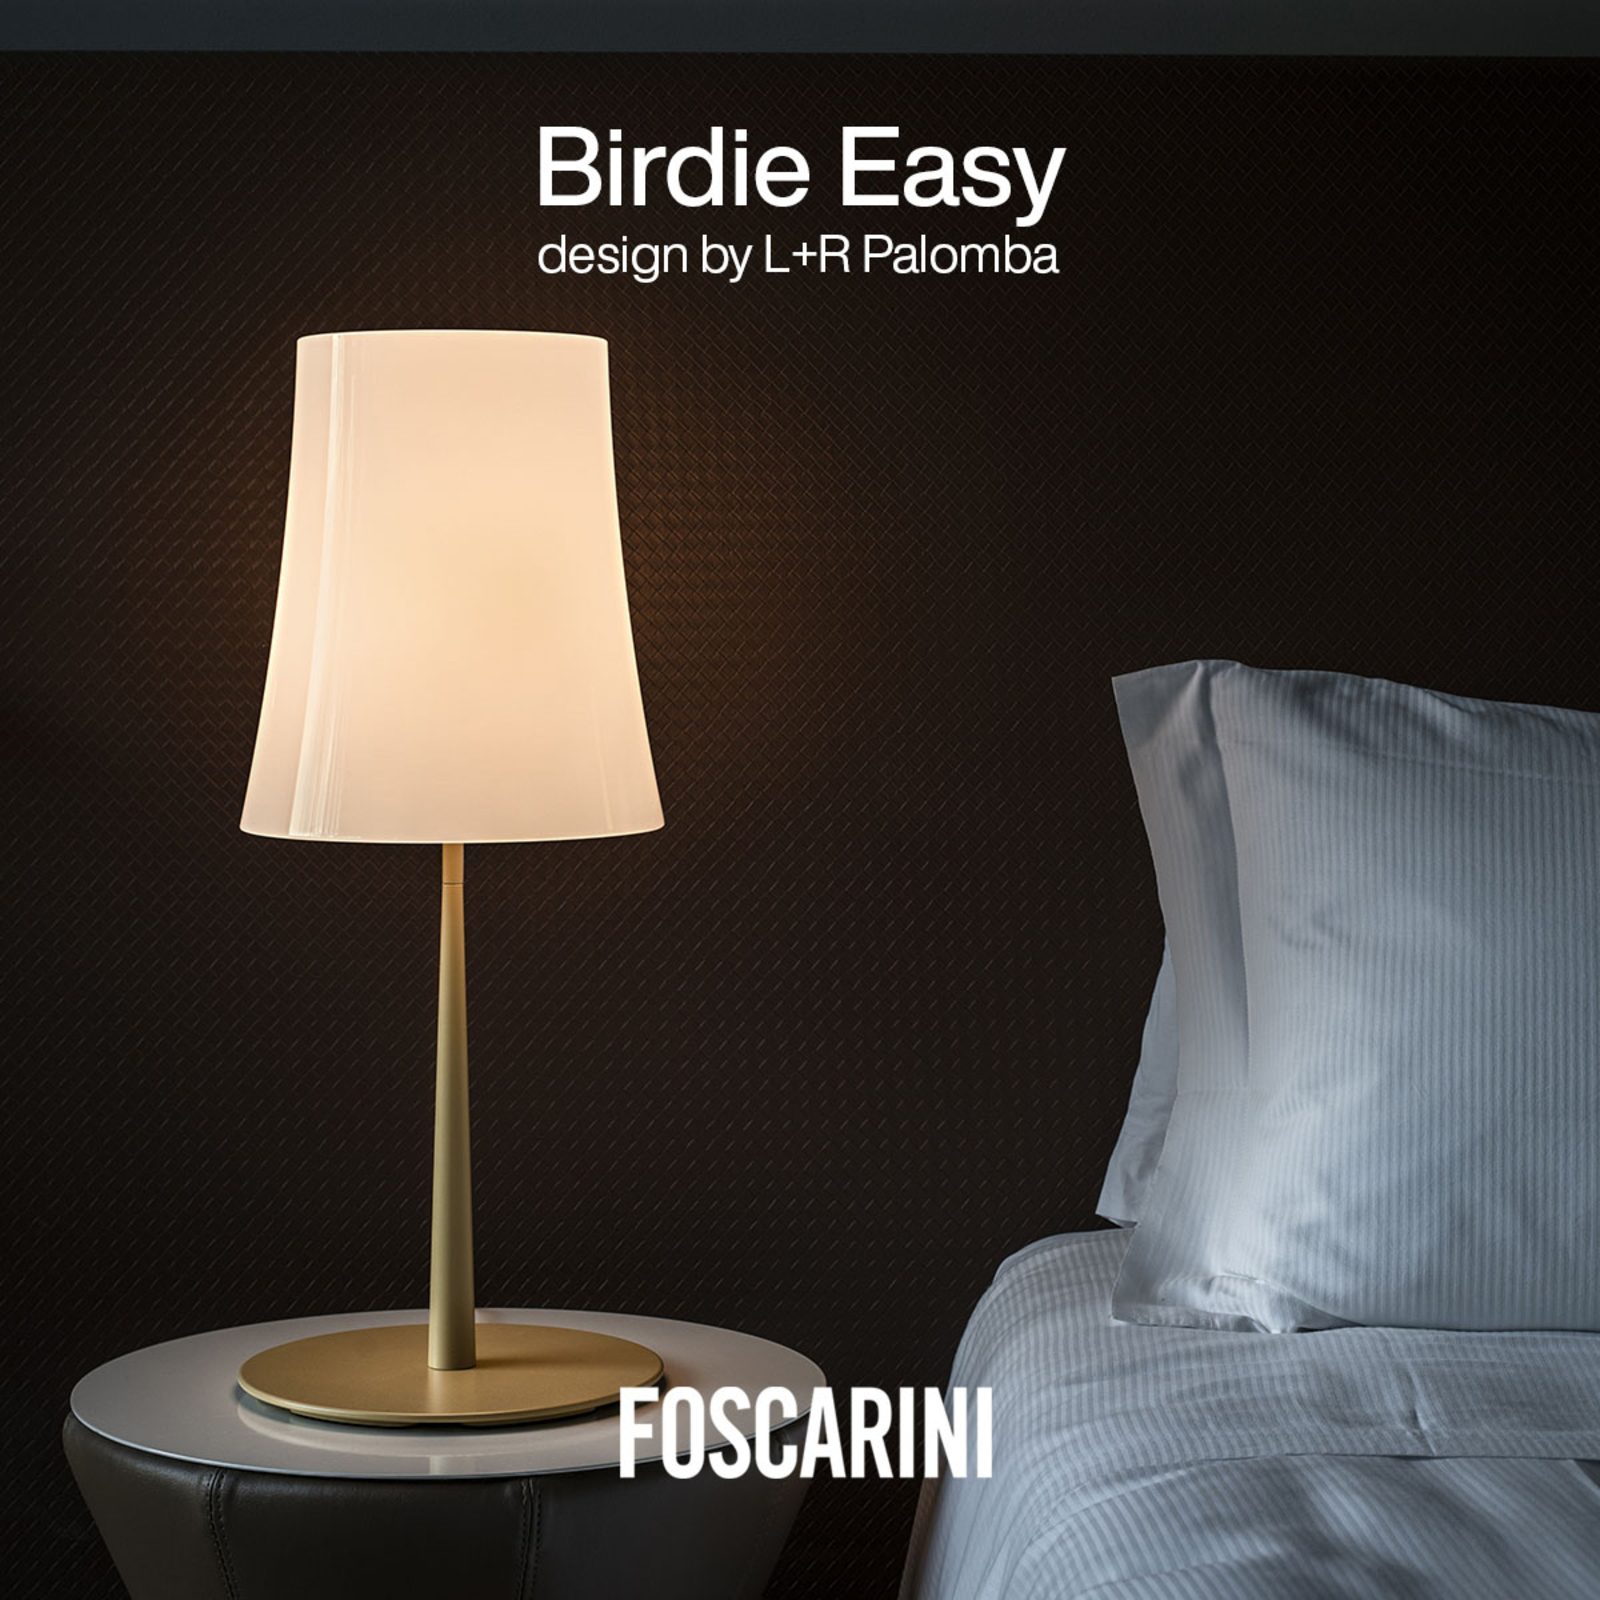 Foscarini Birdie Easy Grande lampe à poser jaune